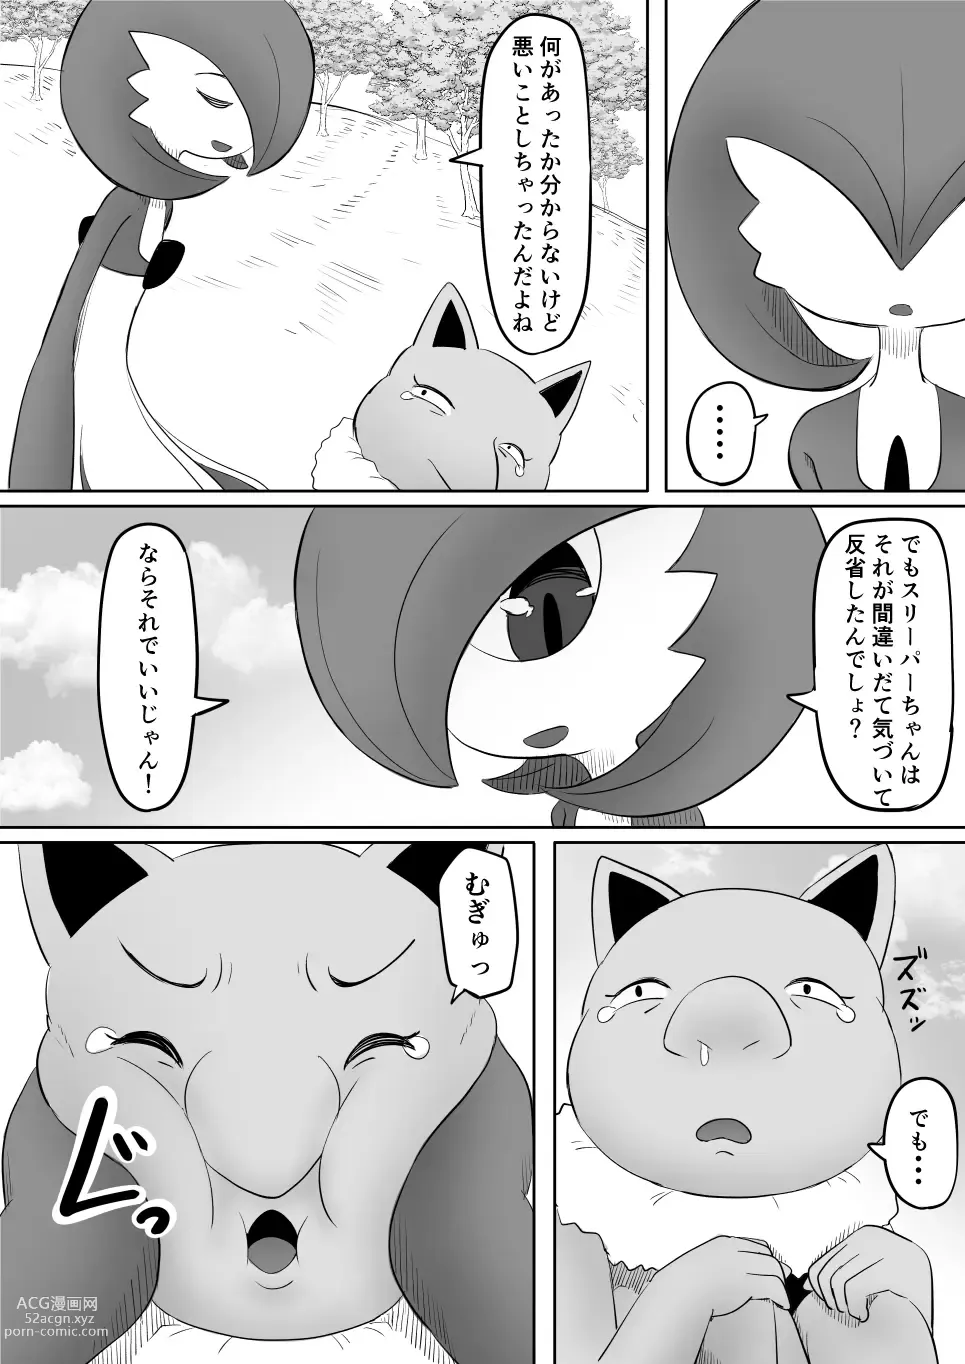 Page 35 of doujinshi Koi o Shita Sleeper-chan.